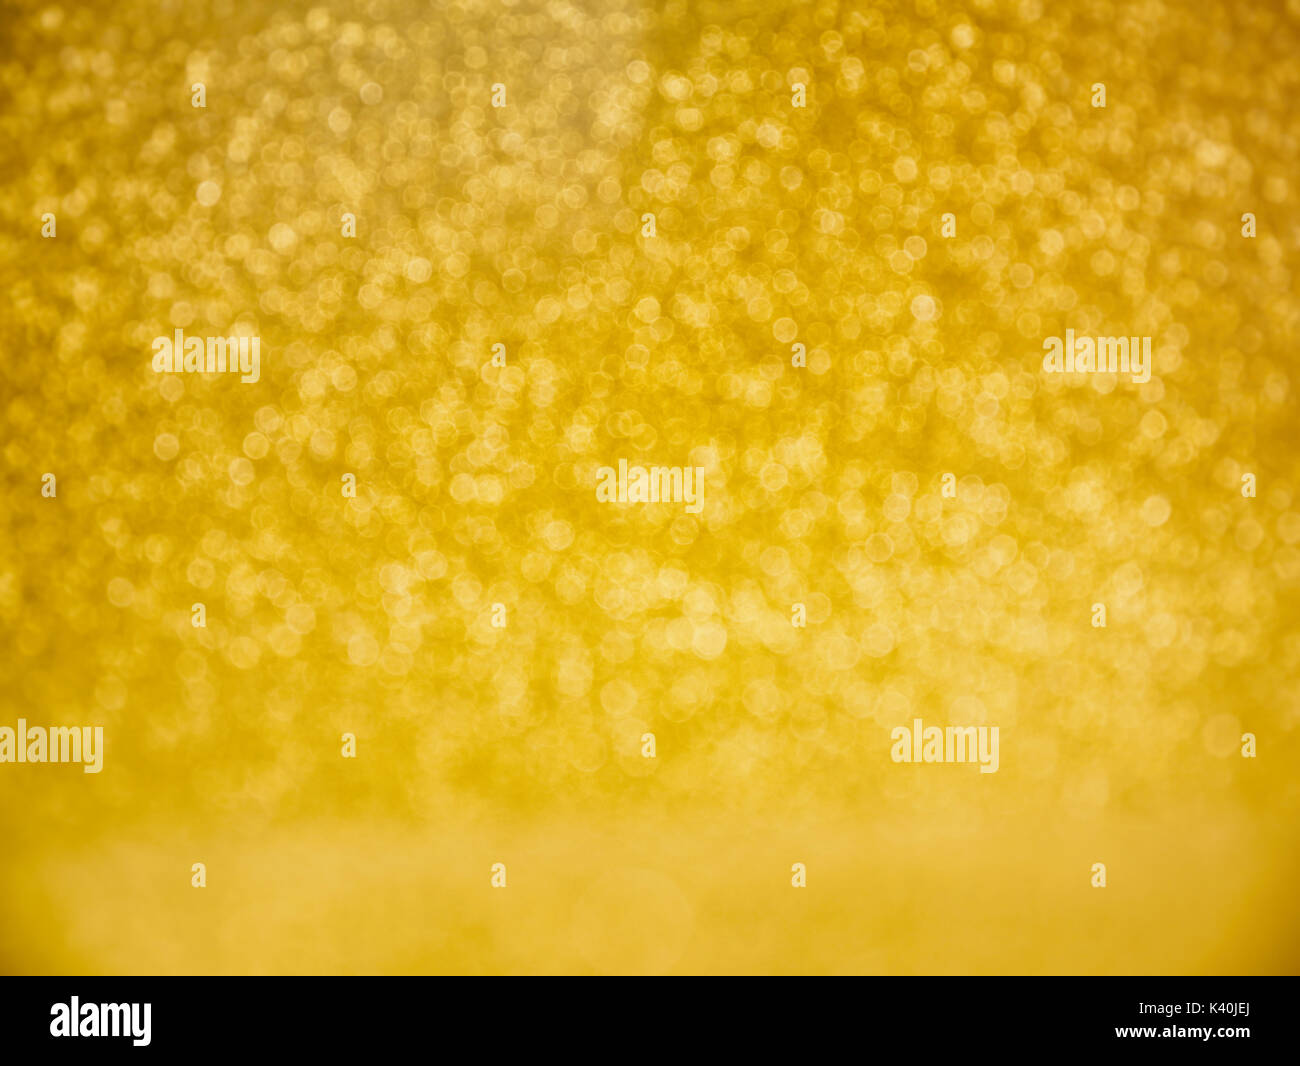 Gold Glitter Background pour célébrer Noël fond lumineux design Banque D'Images